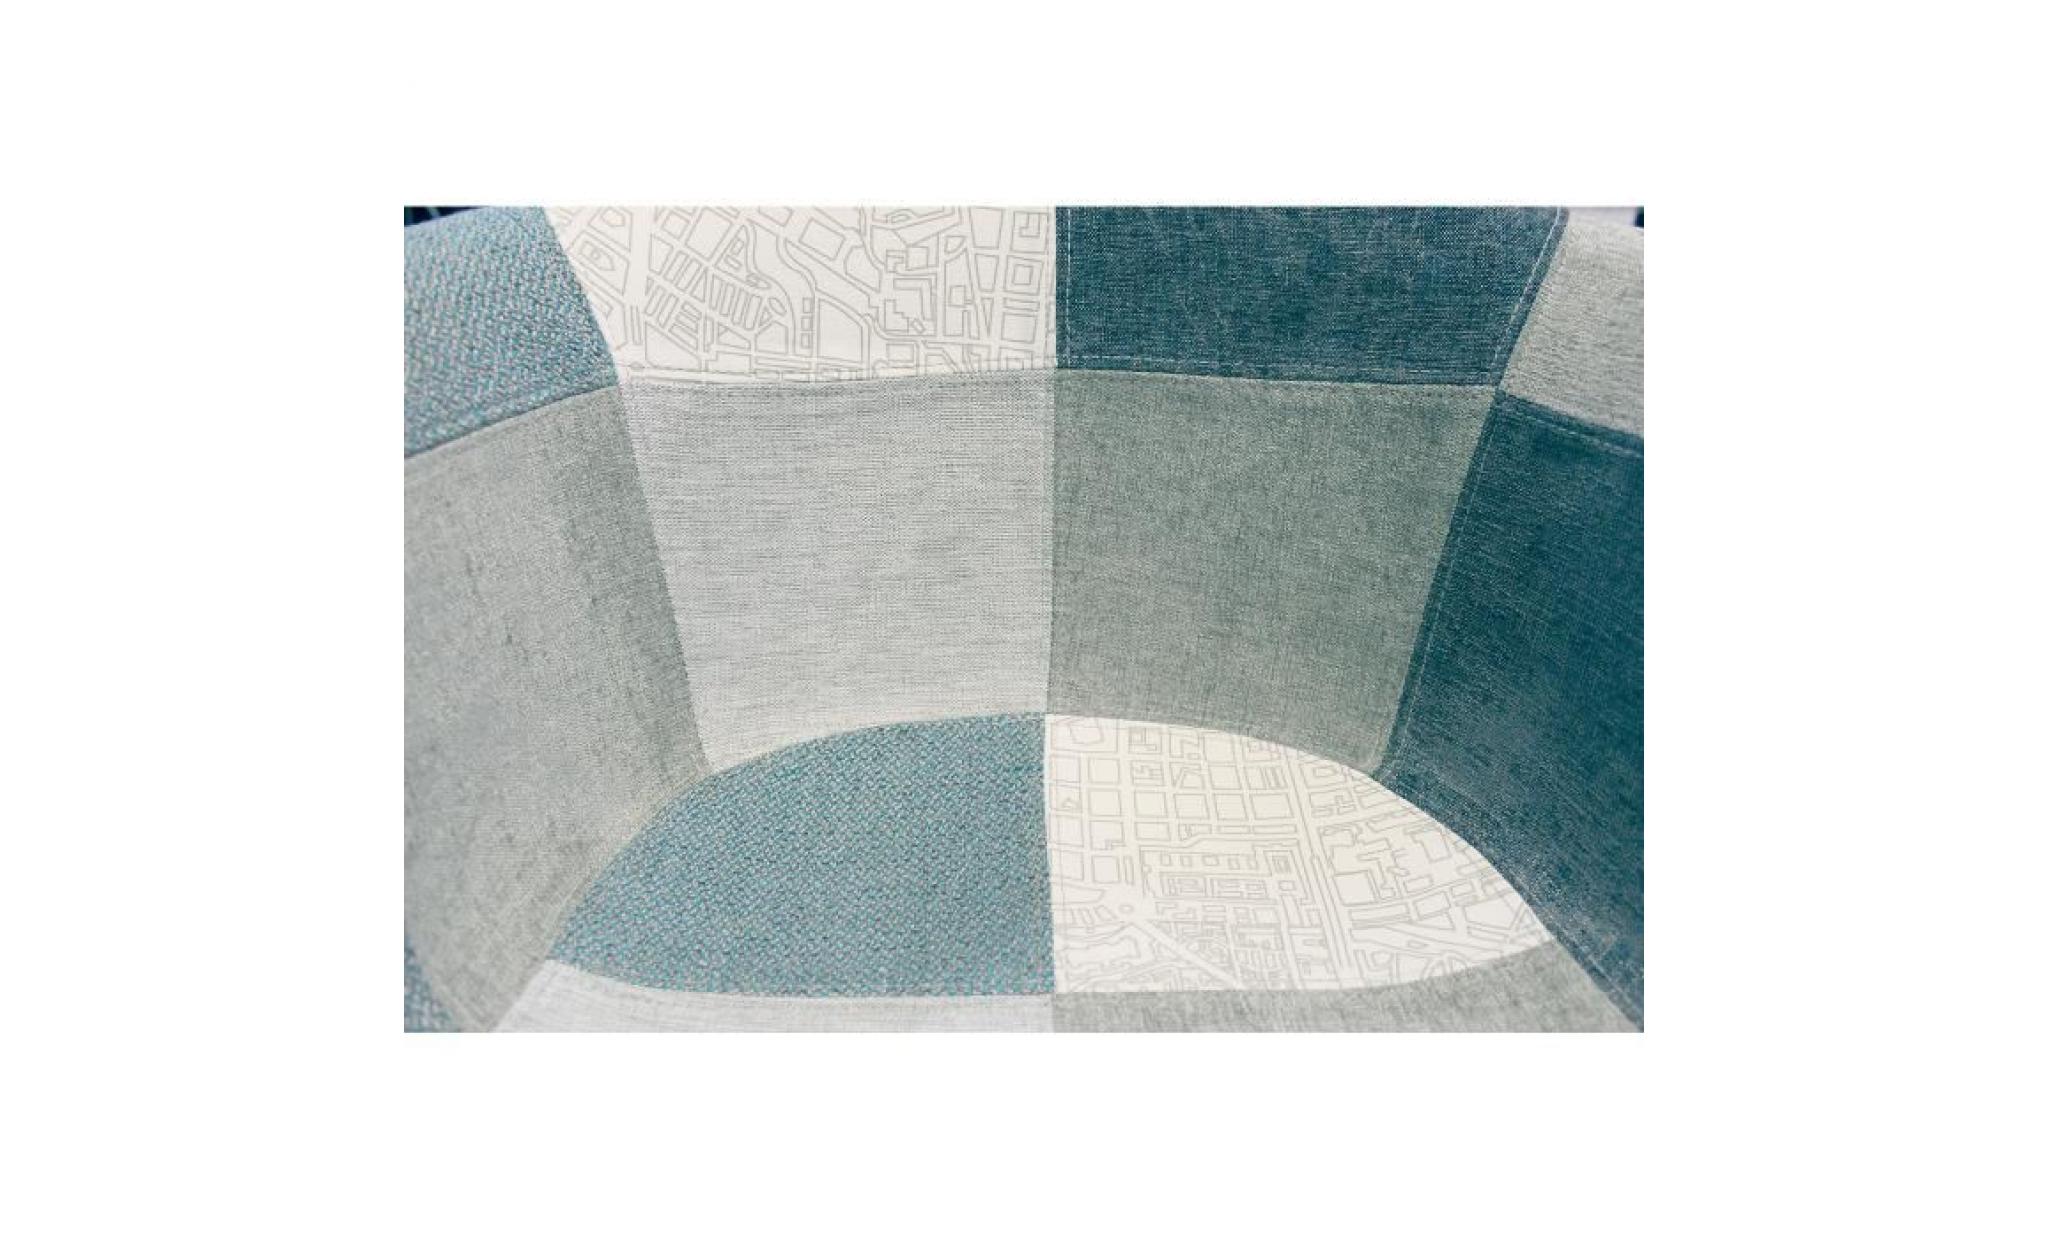 fauteuil tissu patchwork bleu beige gris   chaise design scandinave   pieds bois   azur pas cher